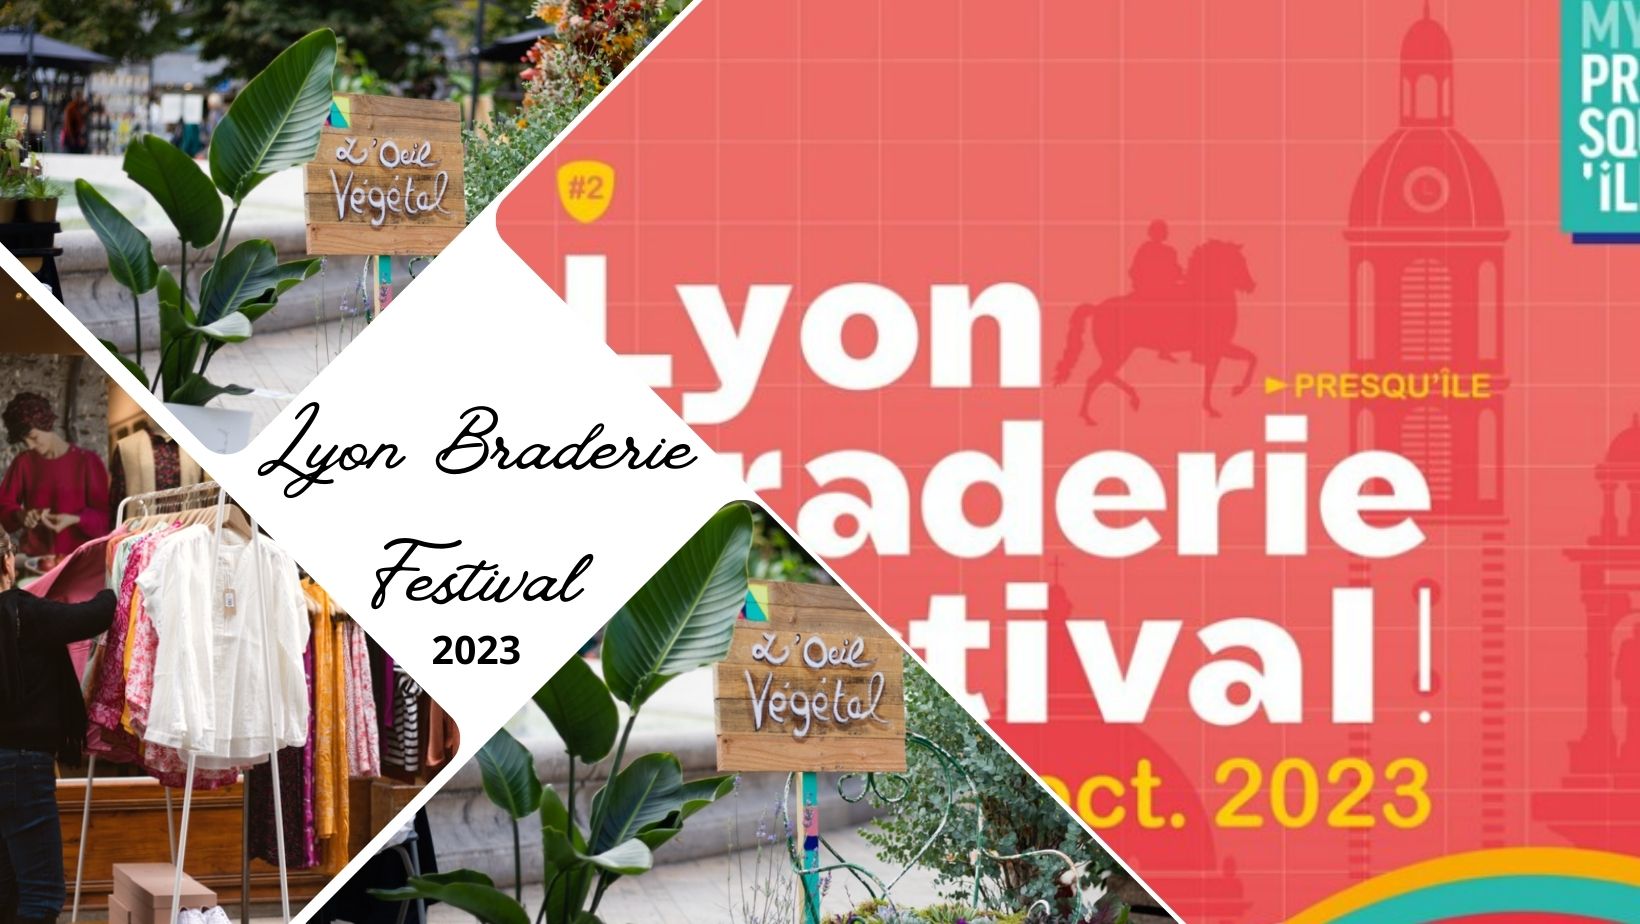 Le Lyon Braderie Festival 2023 de retour du 13 au 15 octobre